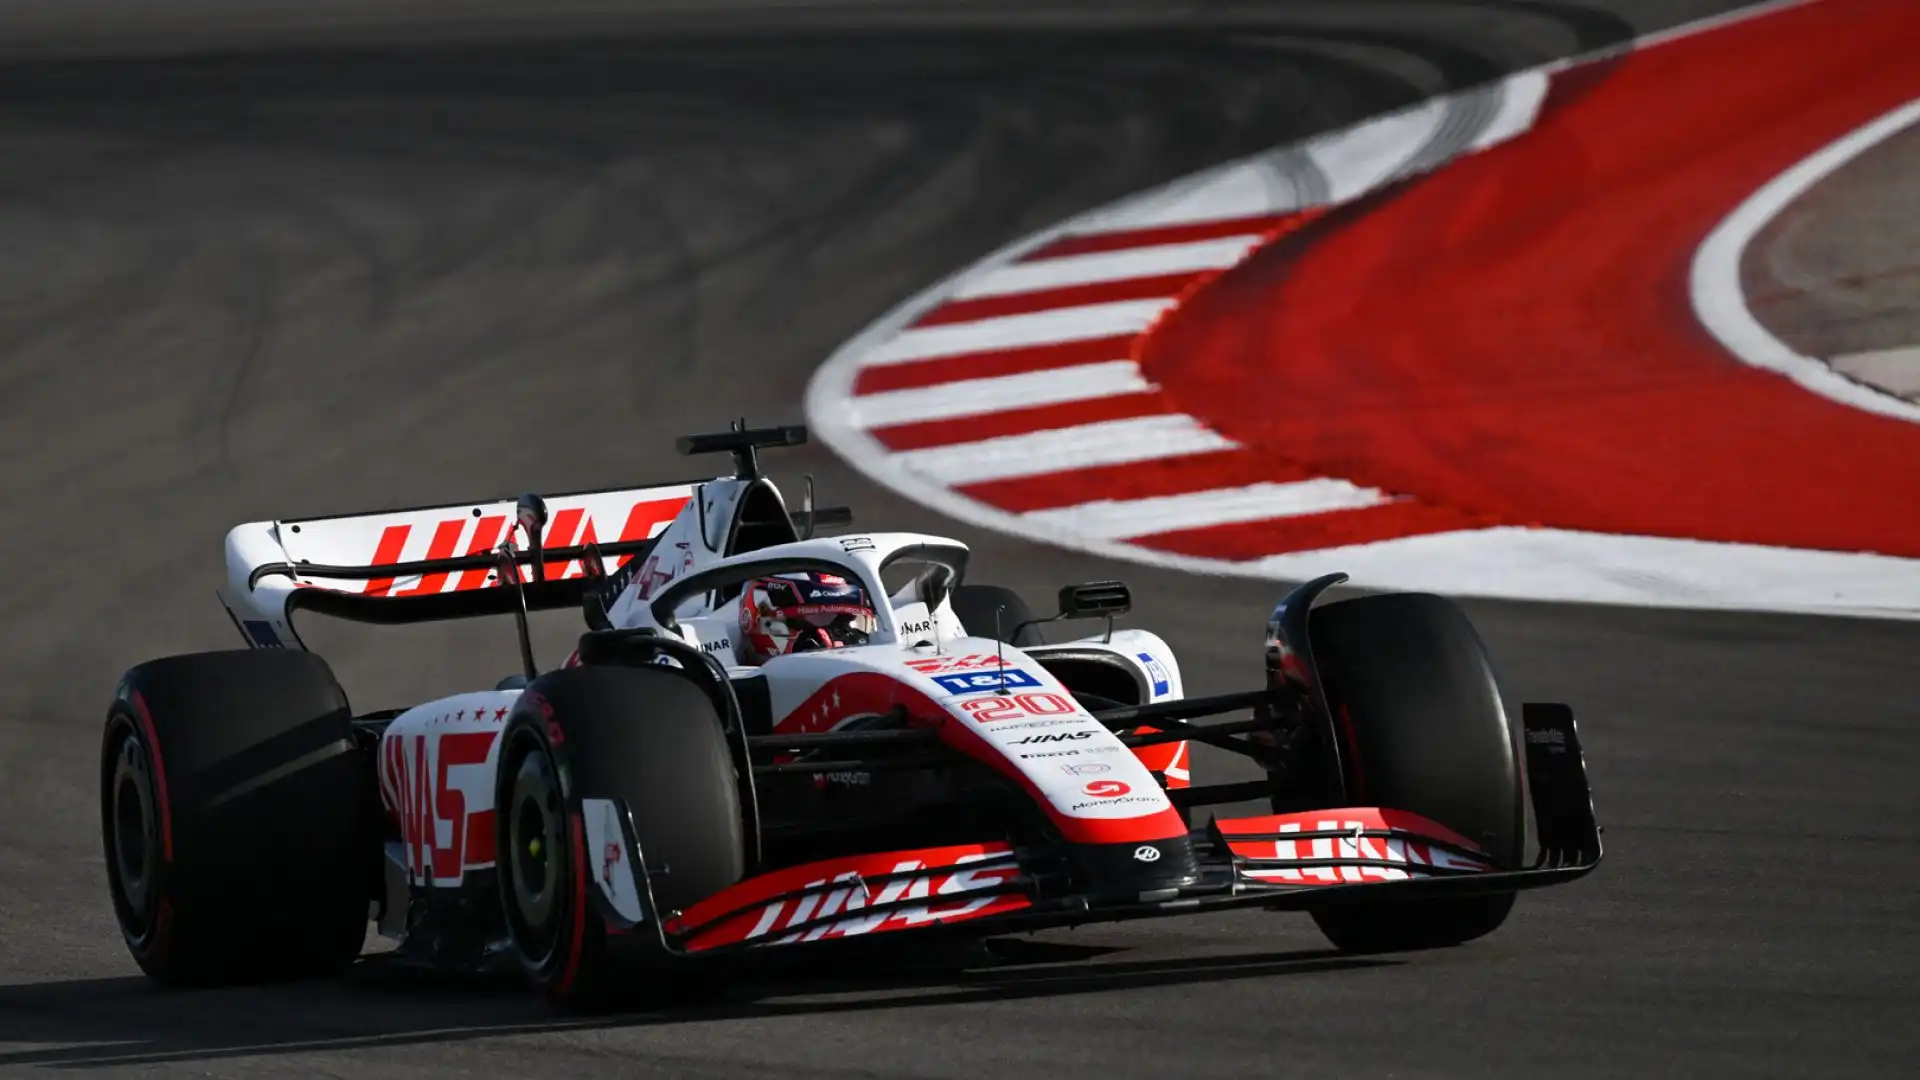 Magnussen 7 - Sfrutta al meglio la sua Haas mettendosi alle spalle metà griglia